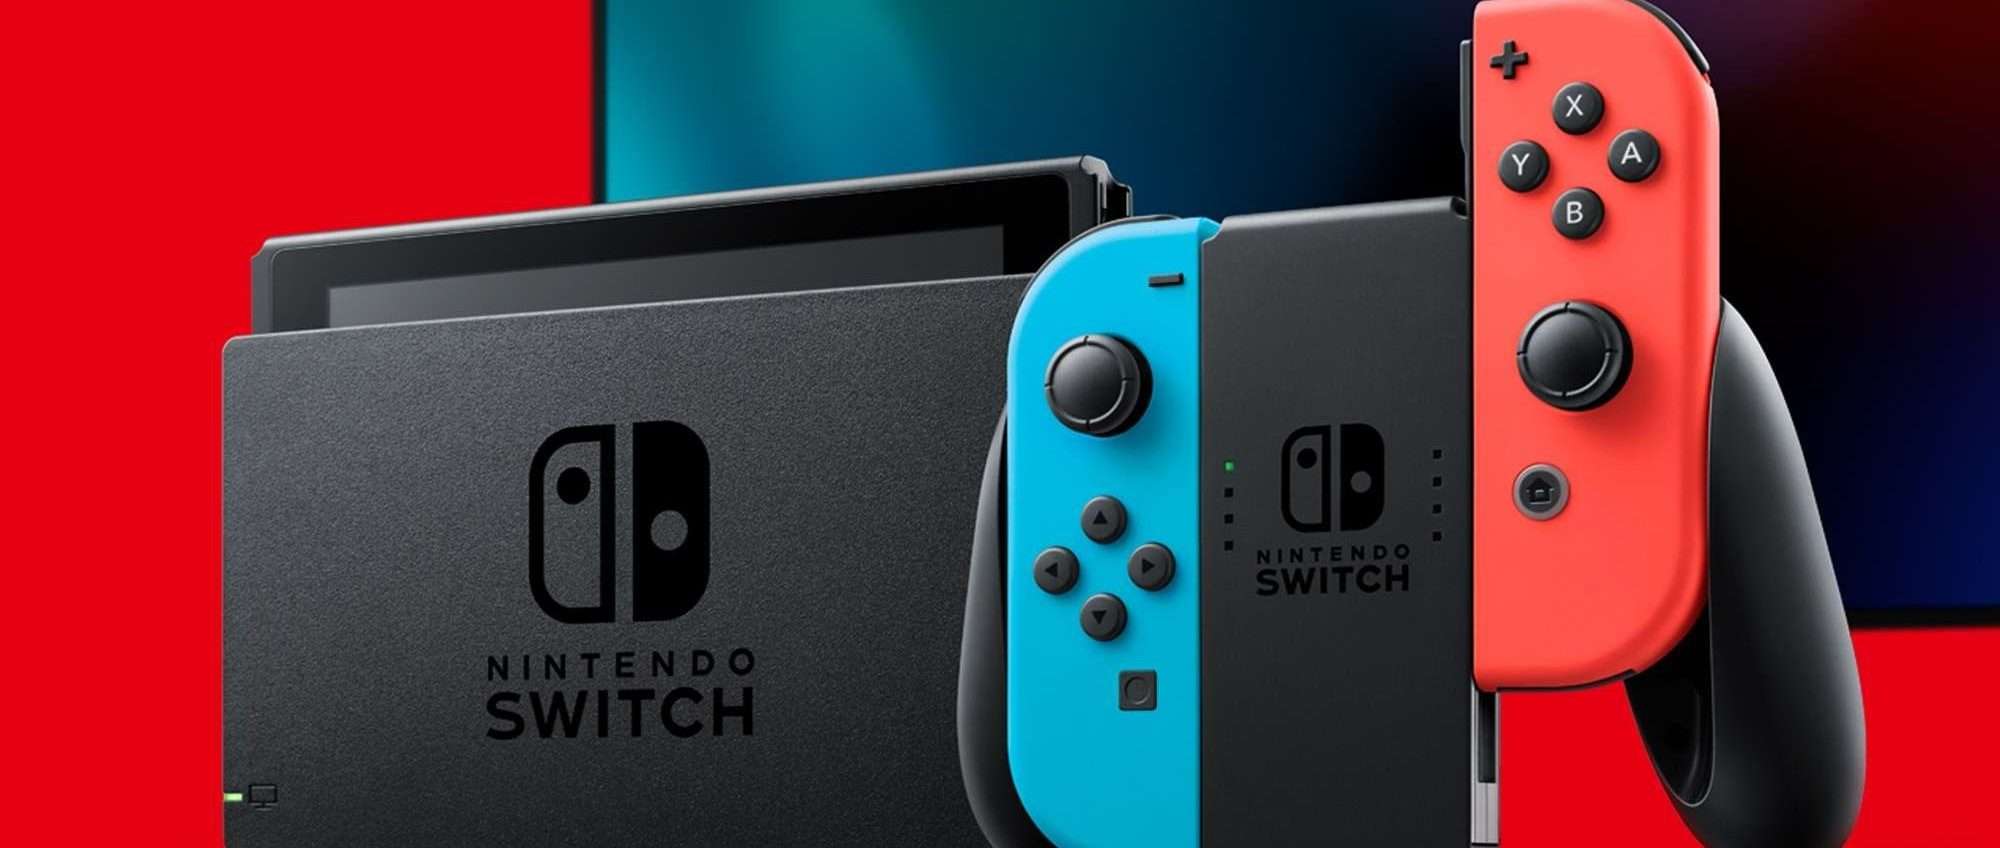 Nintendo Switch disponibile al miglior prezzo del web con QUEST'OFFERTA